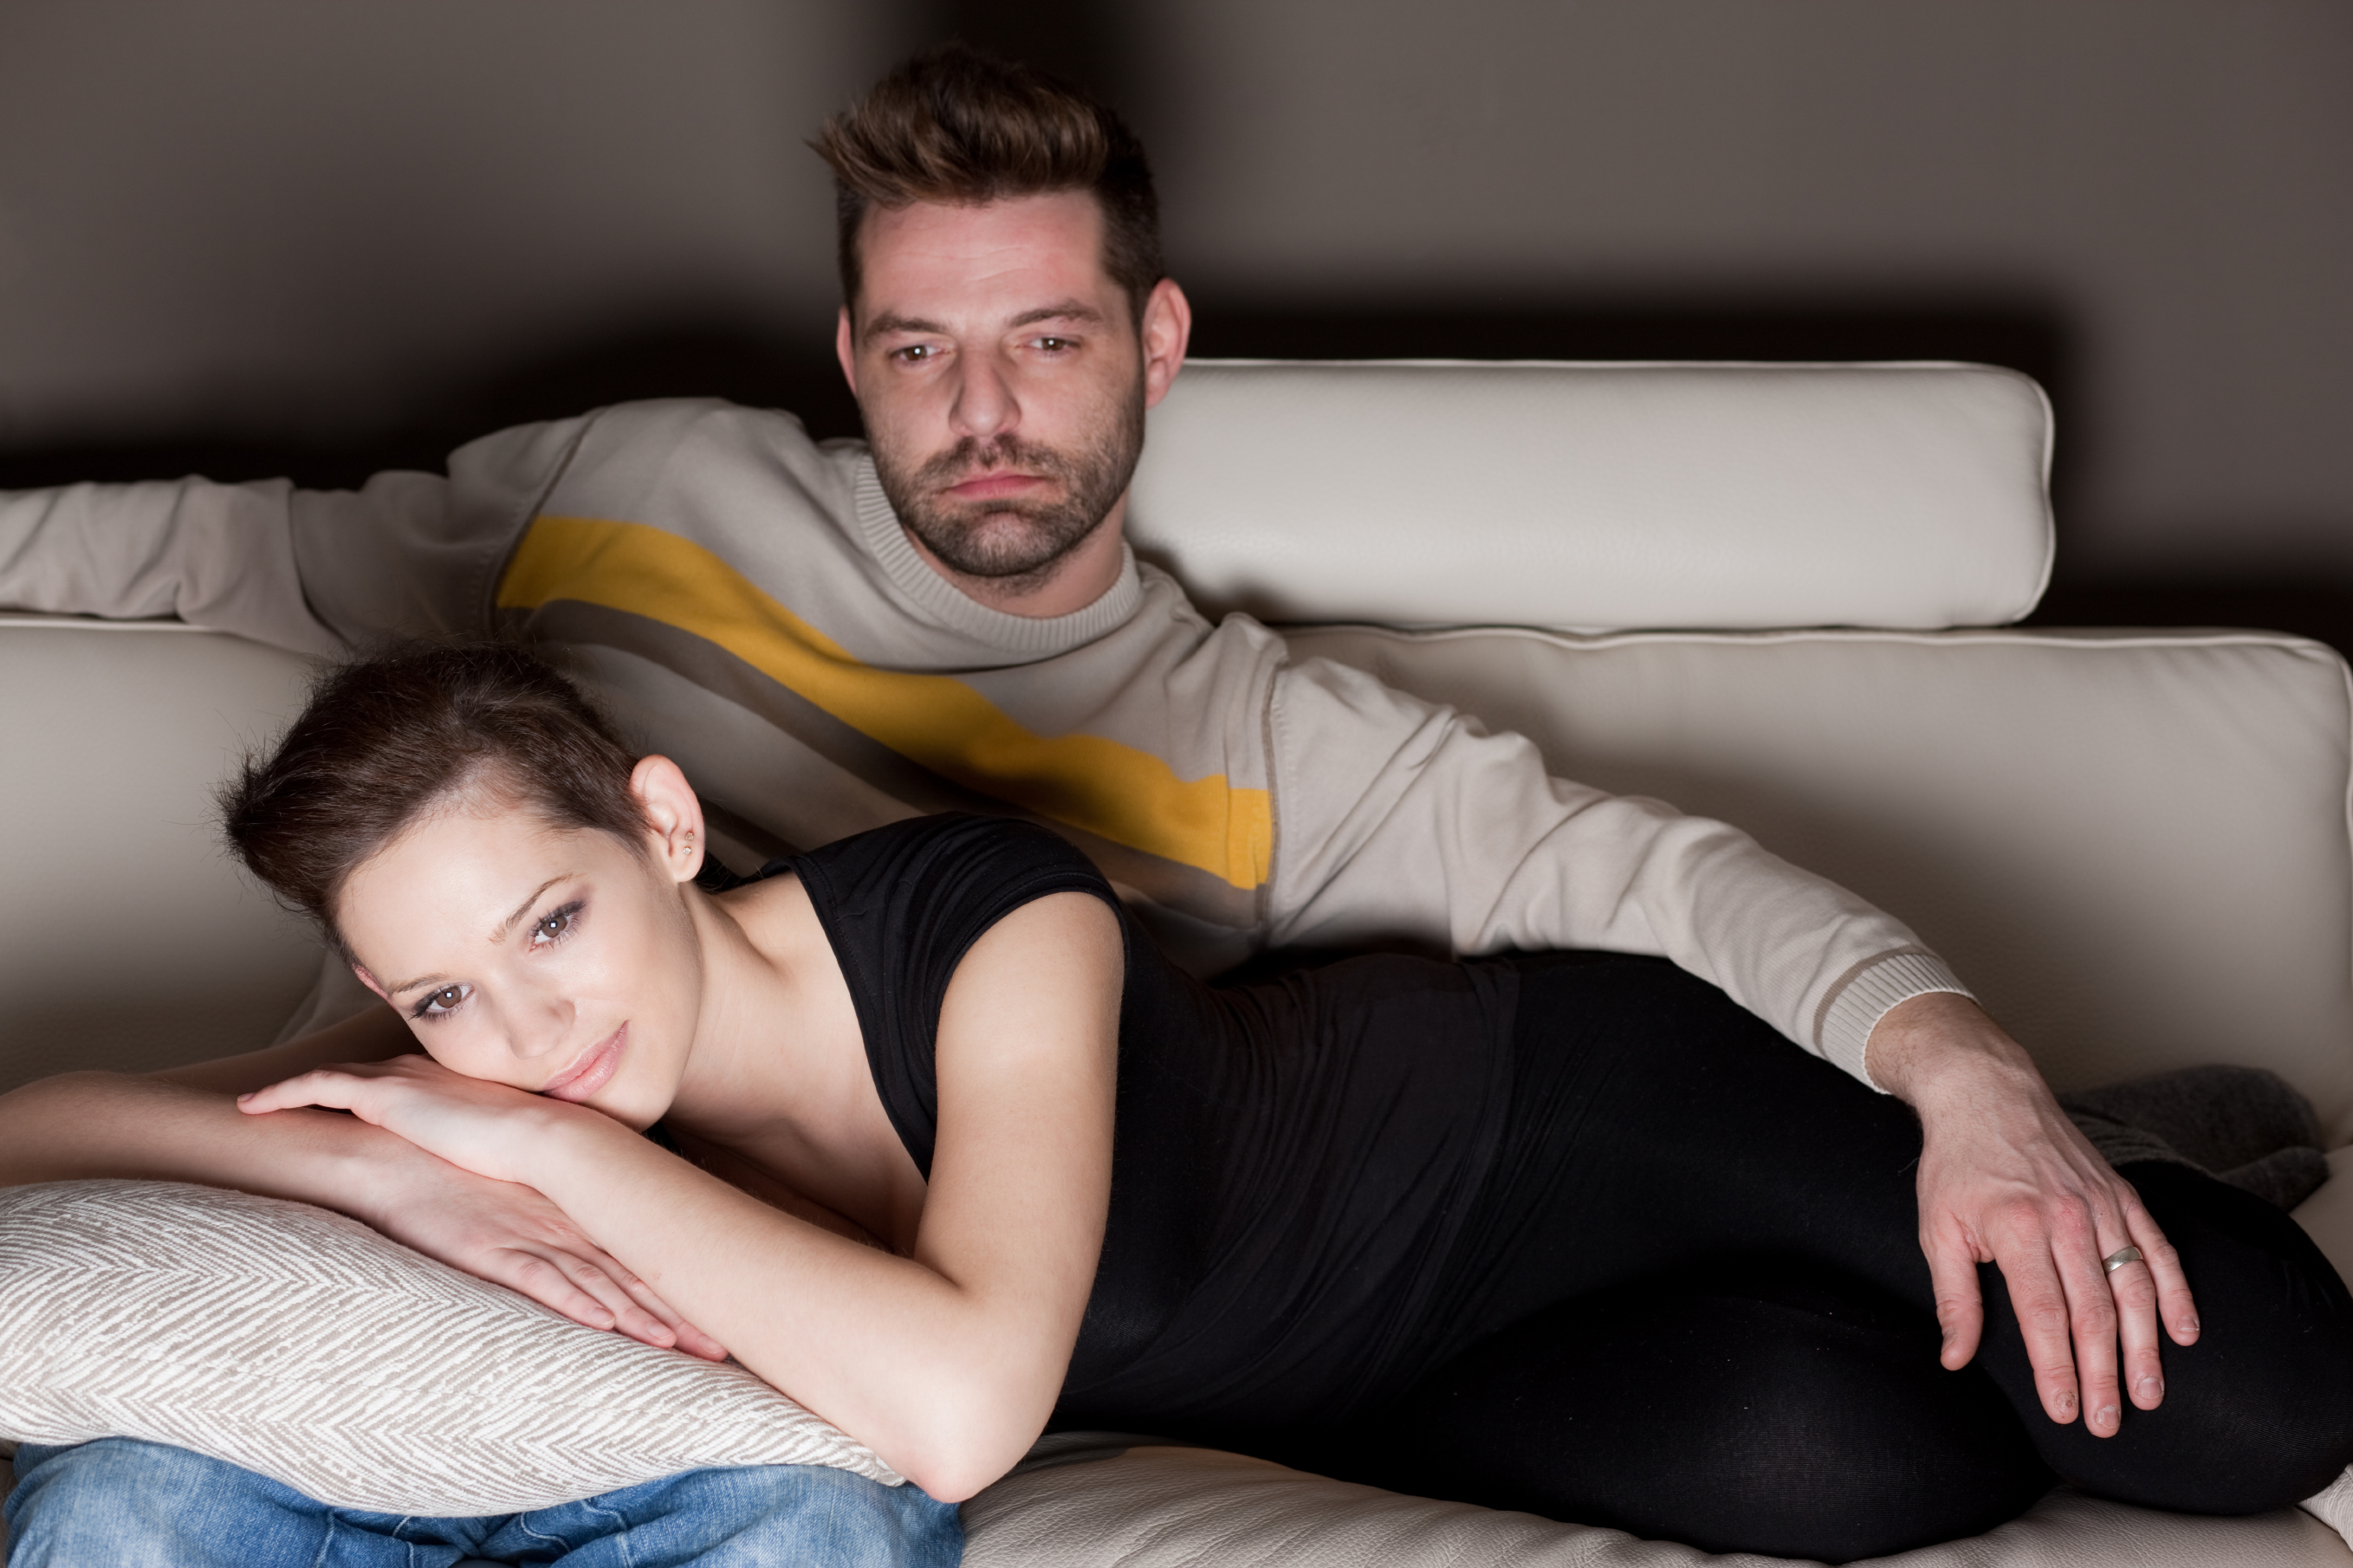 мужчина и женщина смотрят порно вместе, чтобы секс больше не был скучным